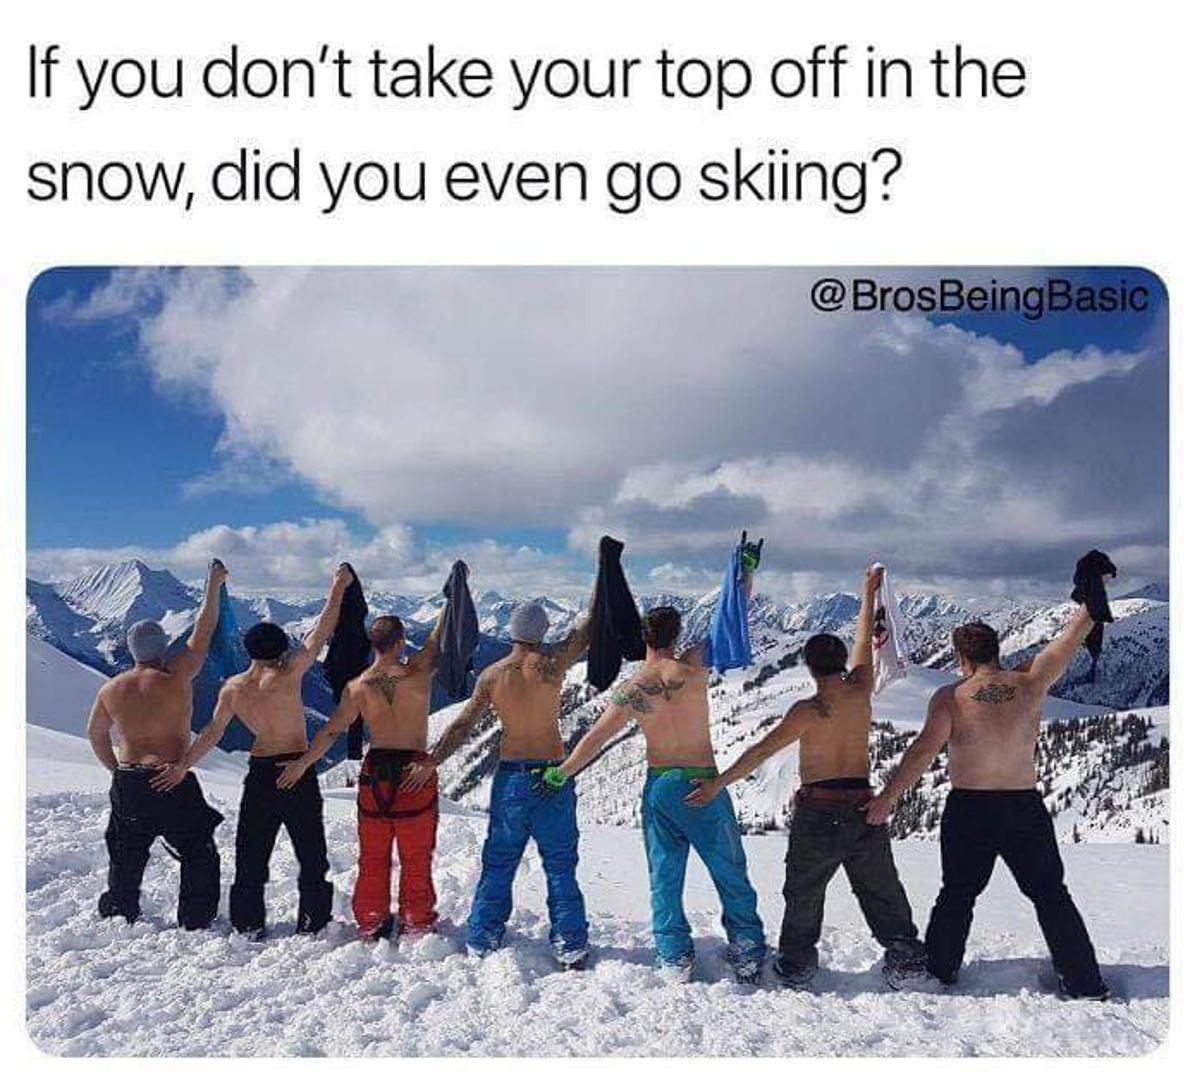 Ako ne skinete majicu na skijanju, jeste li uopće bili na skijanju?